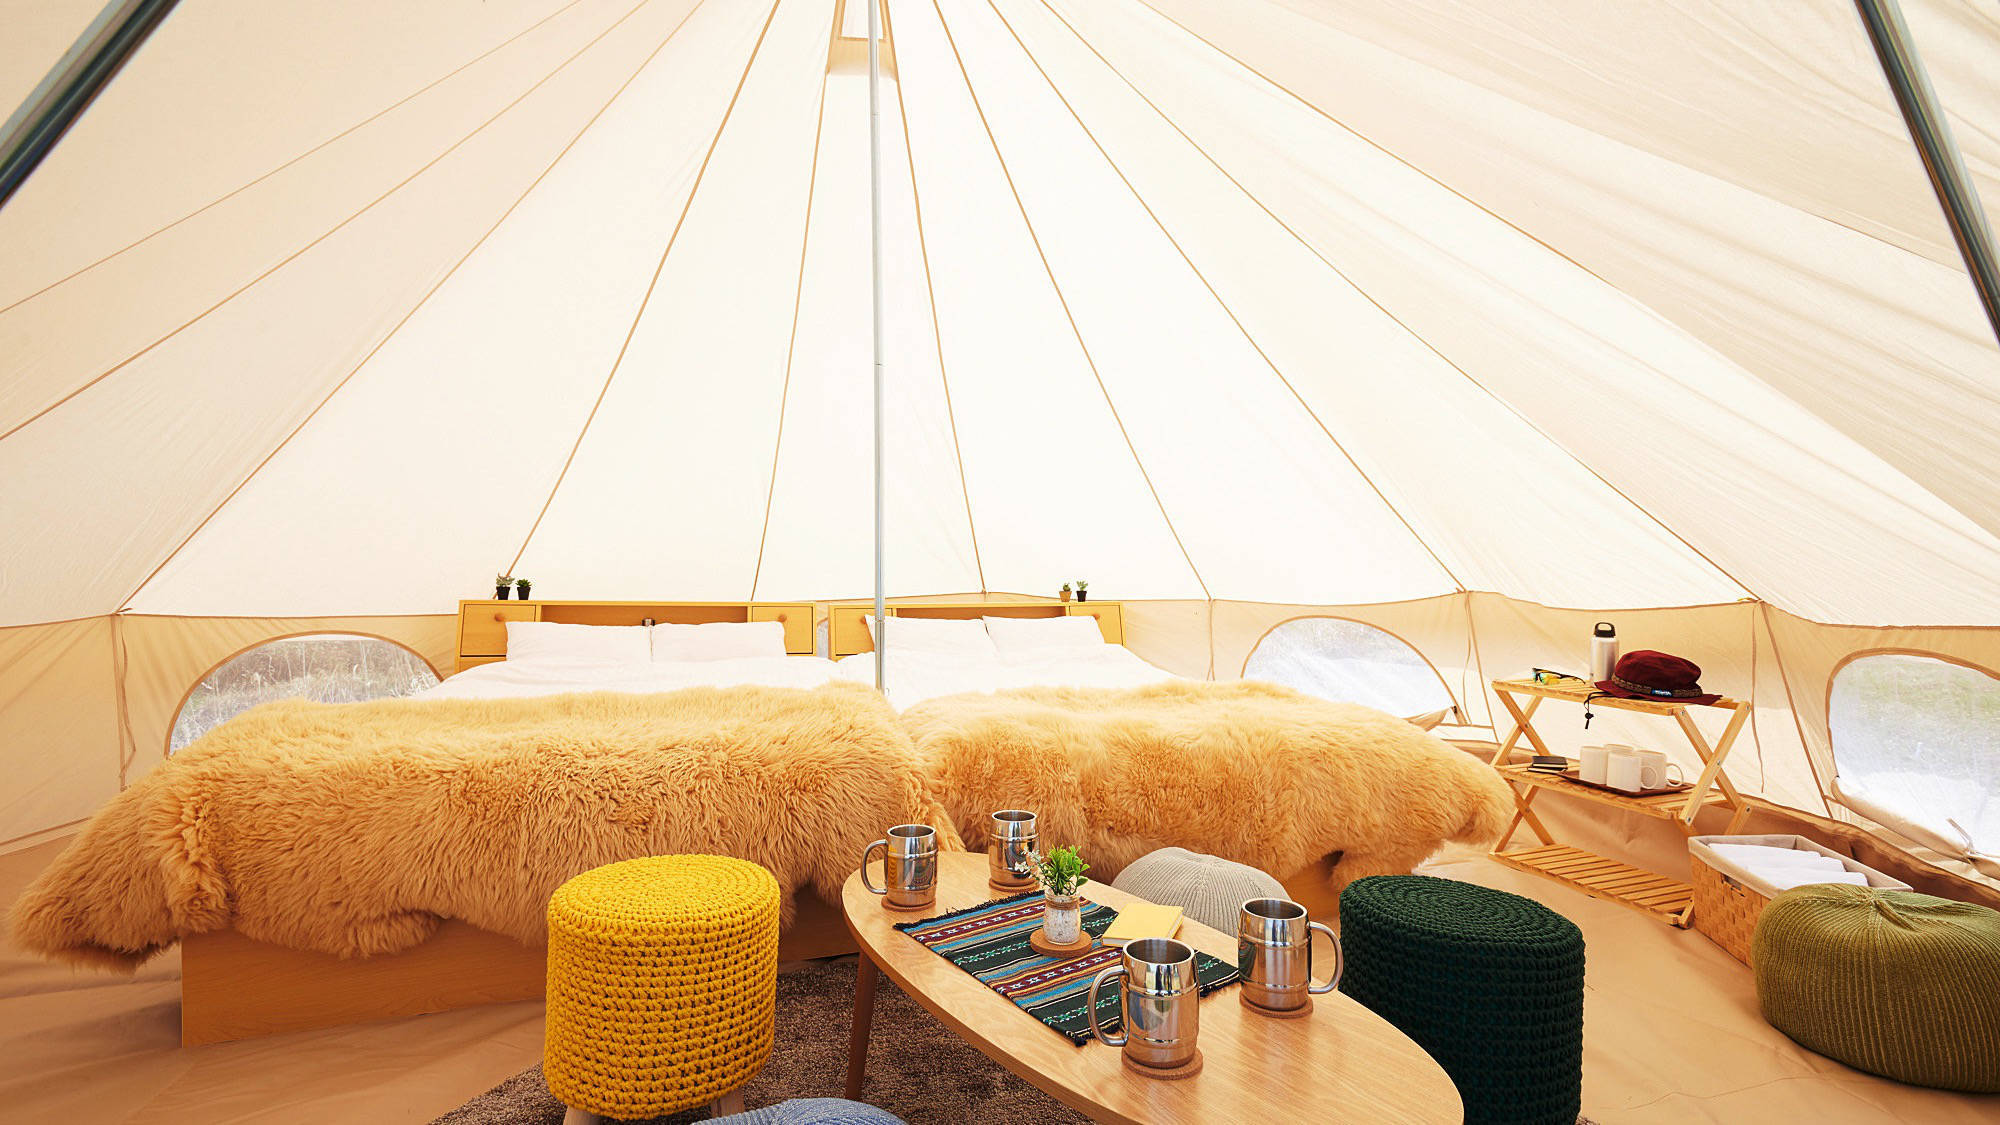 【テント内装一例】ナチュラルで落ち着いた空間に統一されたテントで気軽にグランピング体験を